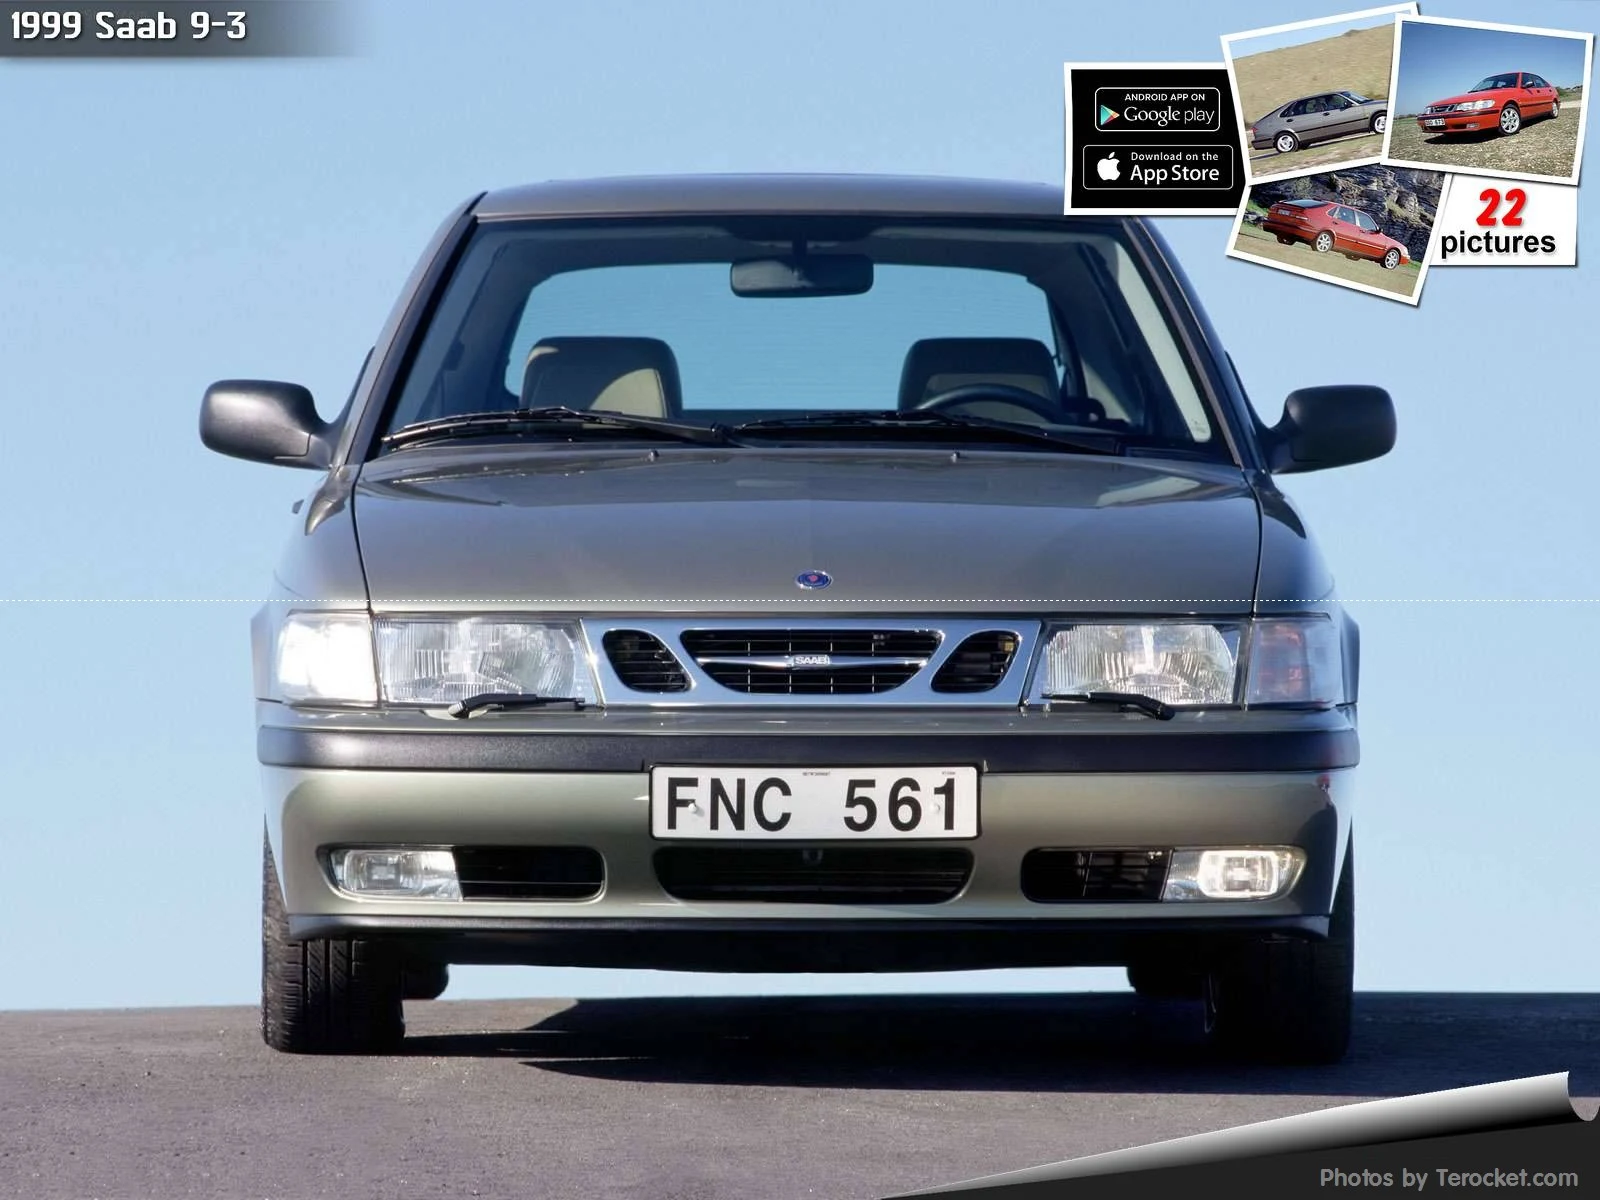 Hình ảnh xe ô tô Saab 9-3 1999 & nội ngoại thất